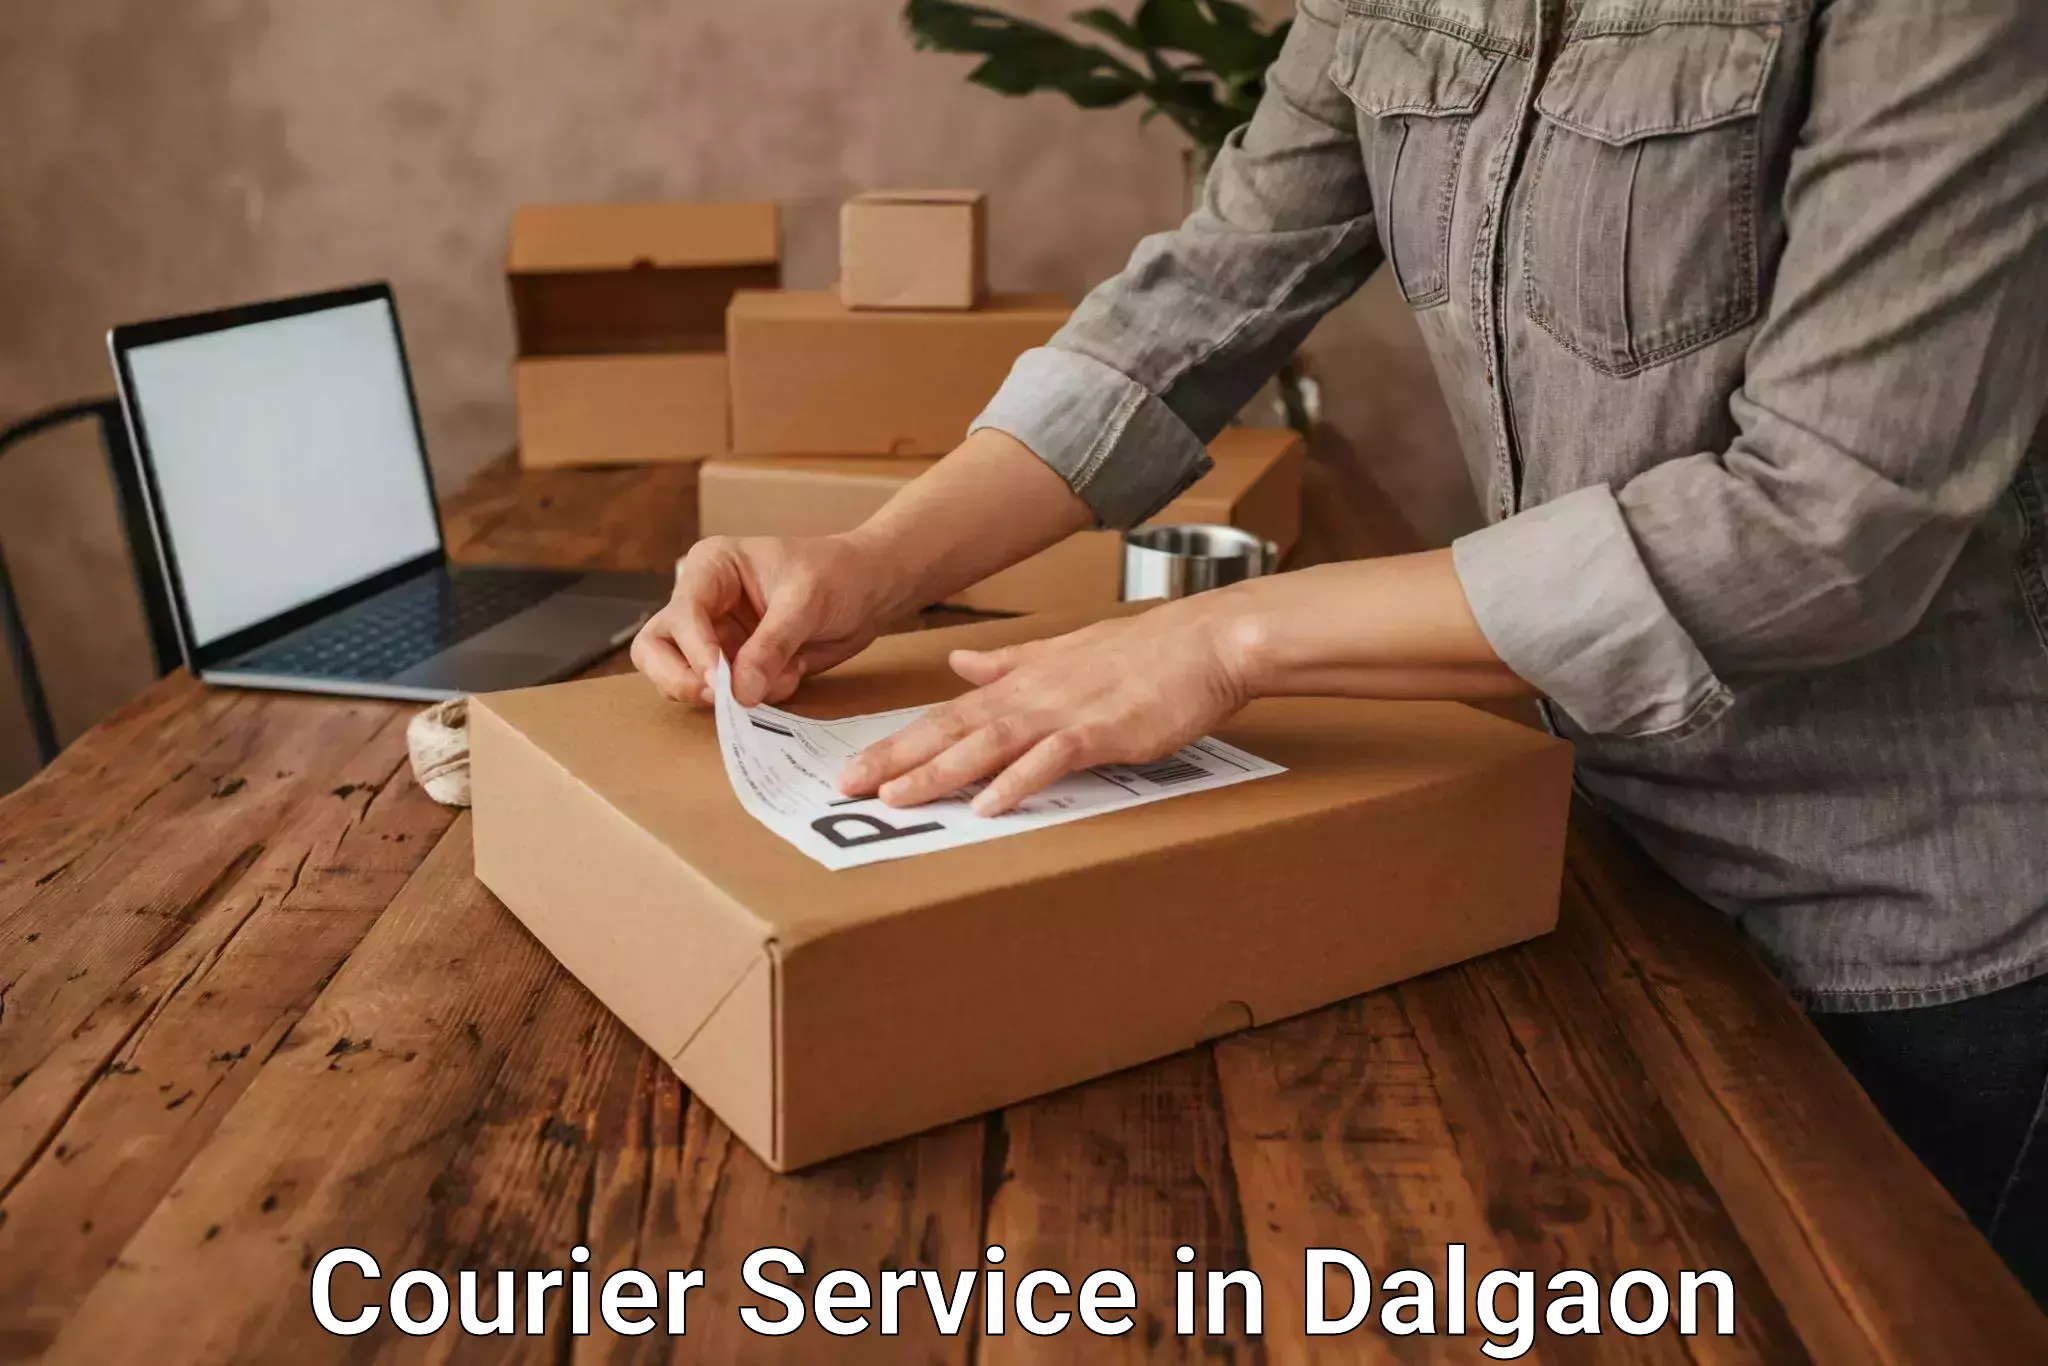 Courier rate comparison in Dalgaon